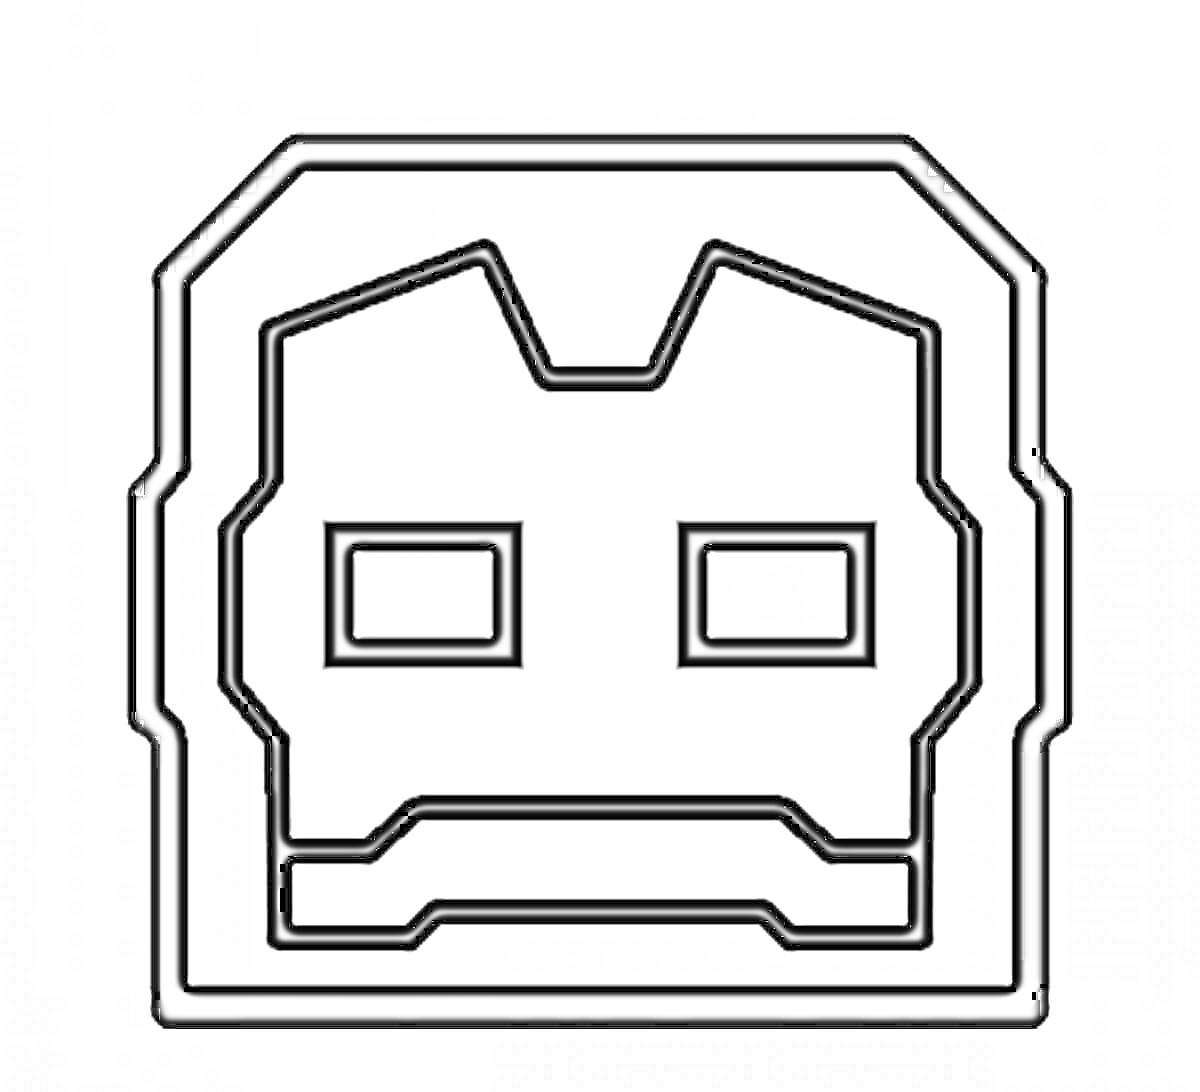 Иконка персонажа в стиле Iron Man из игры Geometry Dash